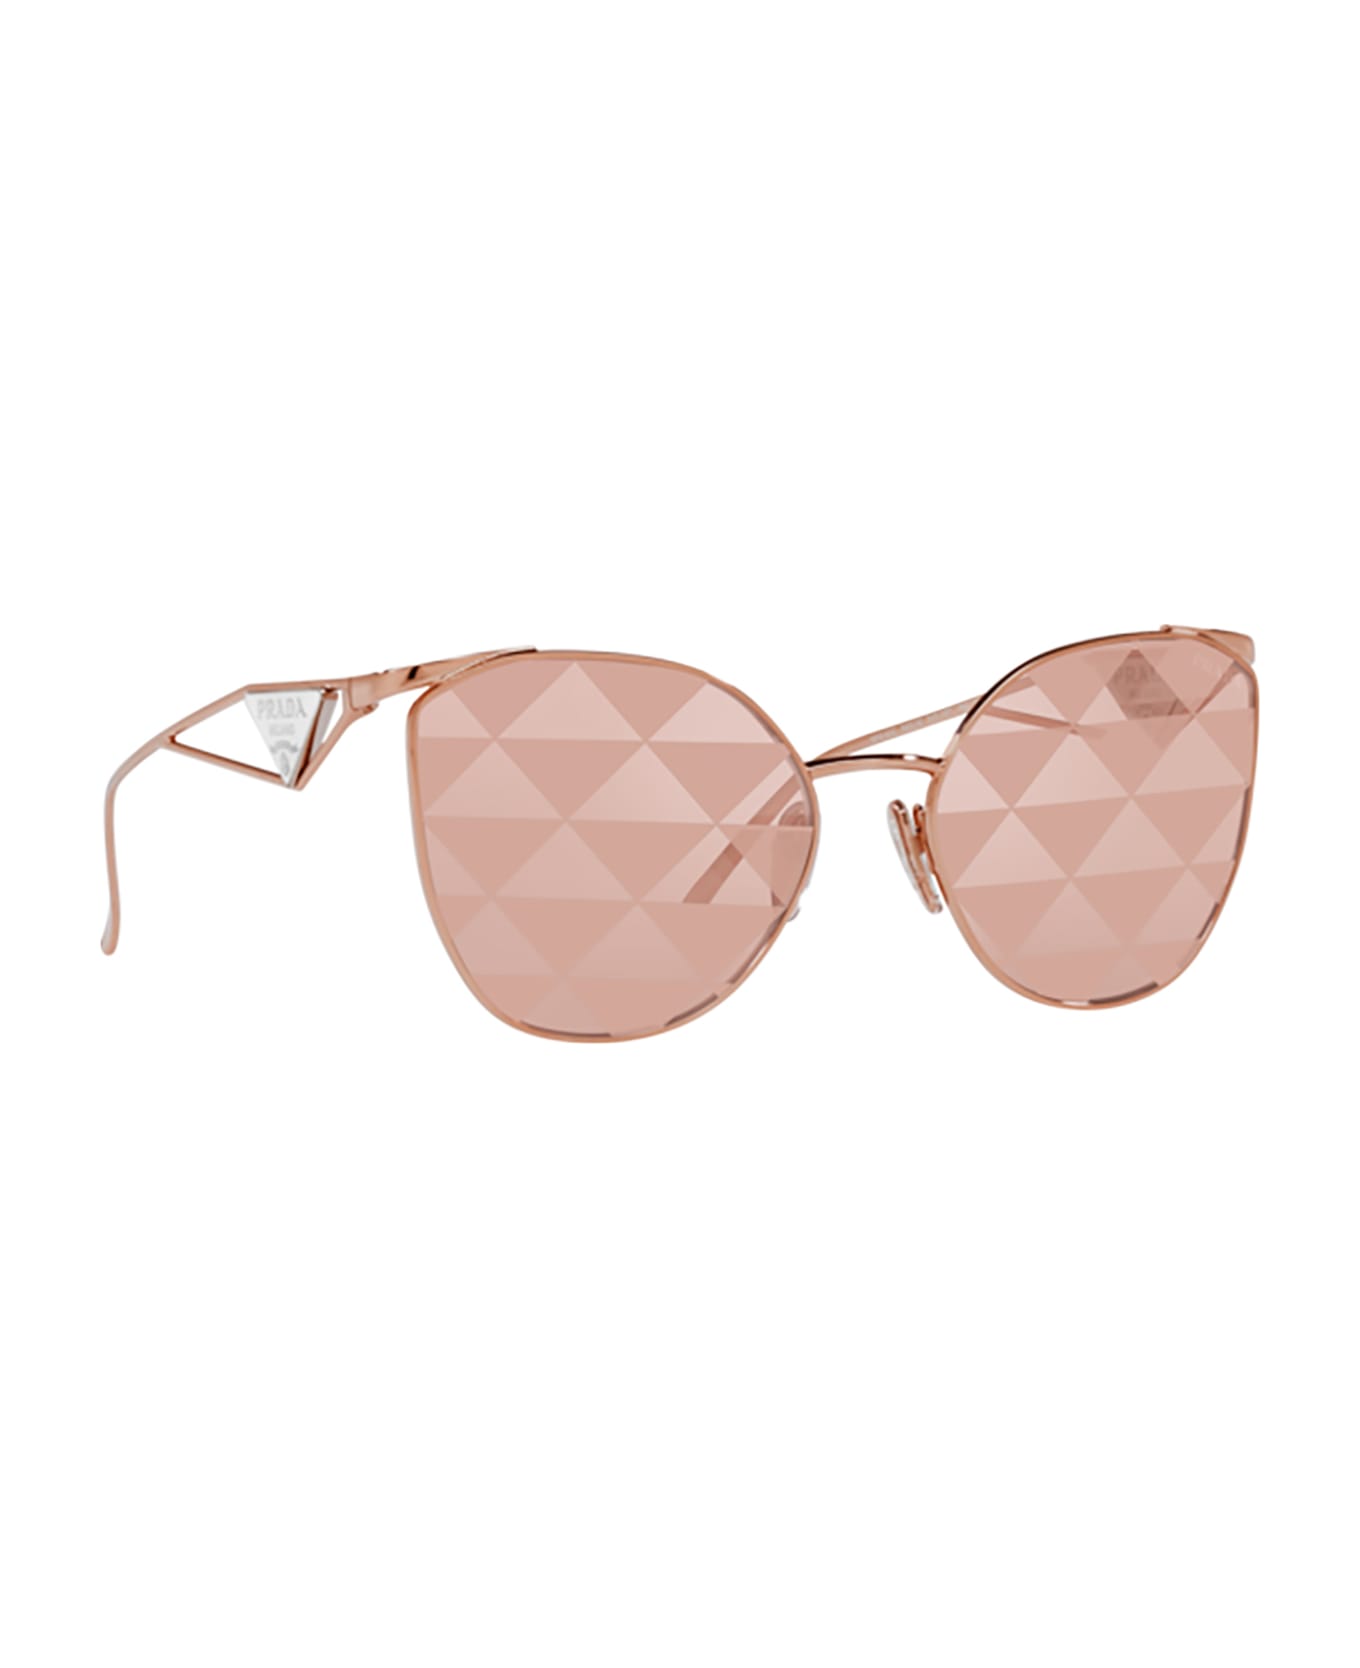 Prada Eyewear Pr 50zs Pink Gold Sunglasses - Pink Gold